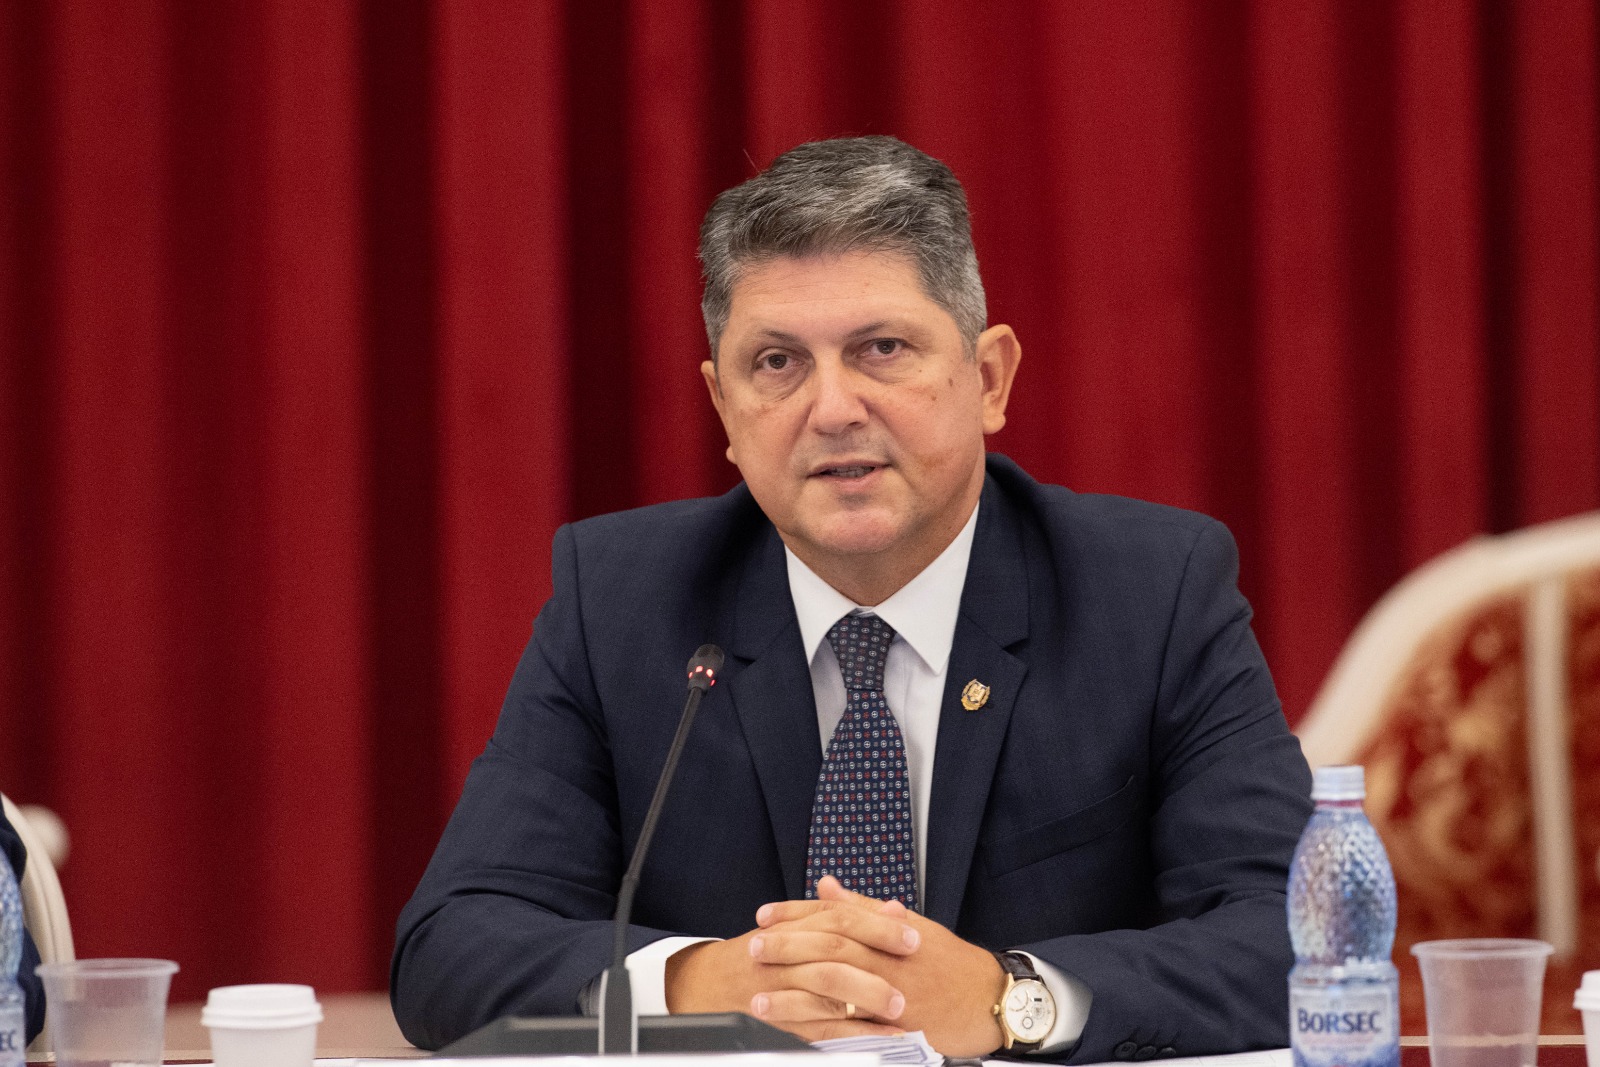 Președintele Comisiei pentru politică externă din Senatul României, senatorul Titus Corlățean, salută recomandarea Comisiei Europene cu privire la începerea negocierilor de aderare la Uniunea Europeană cu Ucraina şi Republica Moldova